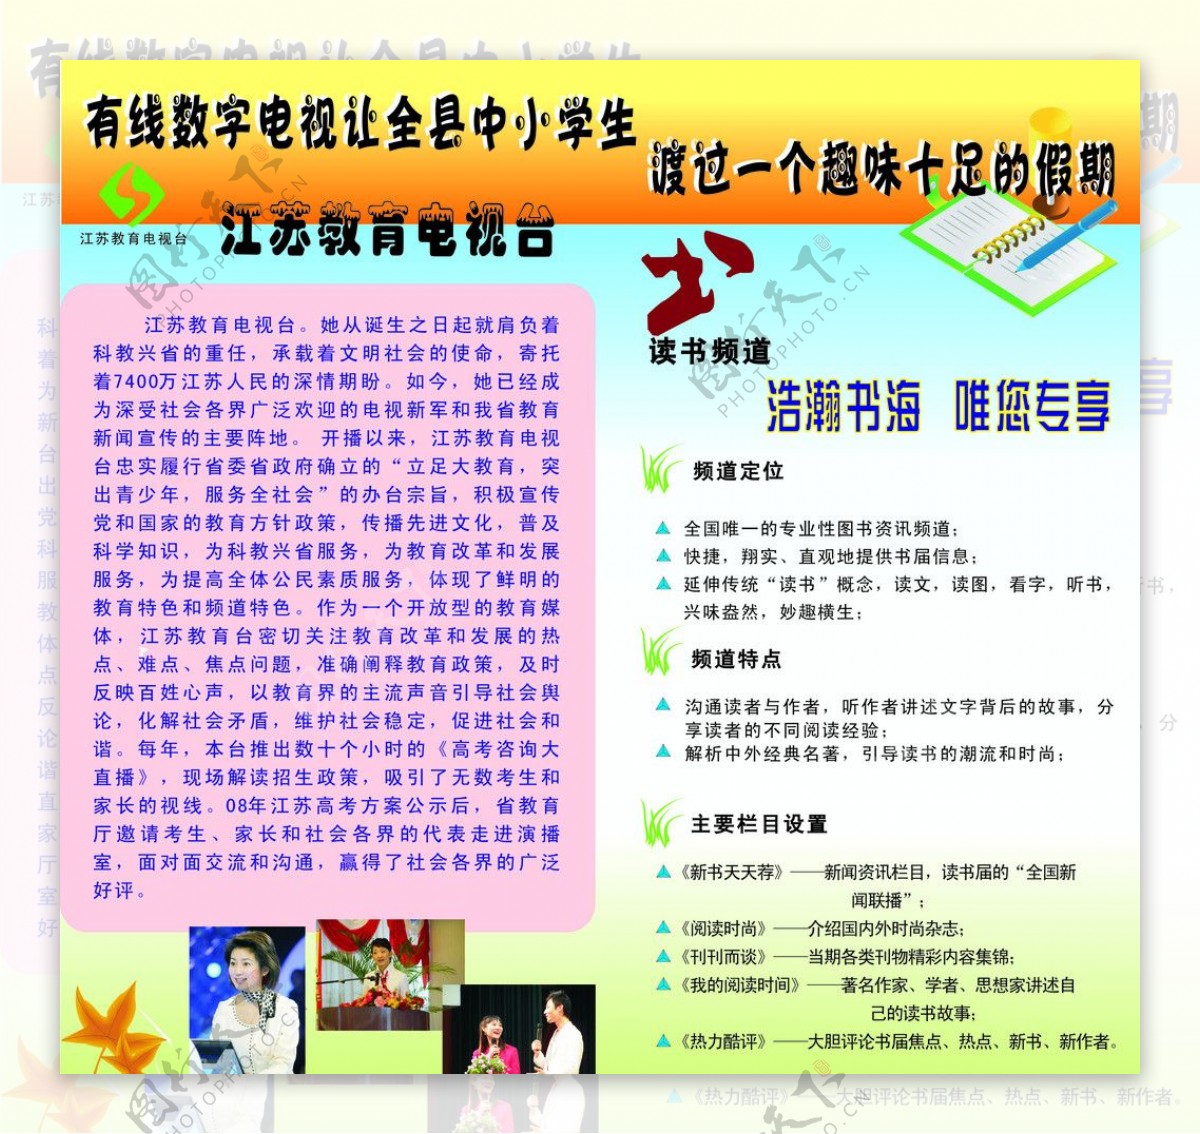 江苏教育电视台宣传画册图片